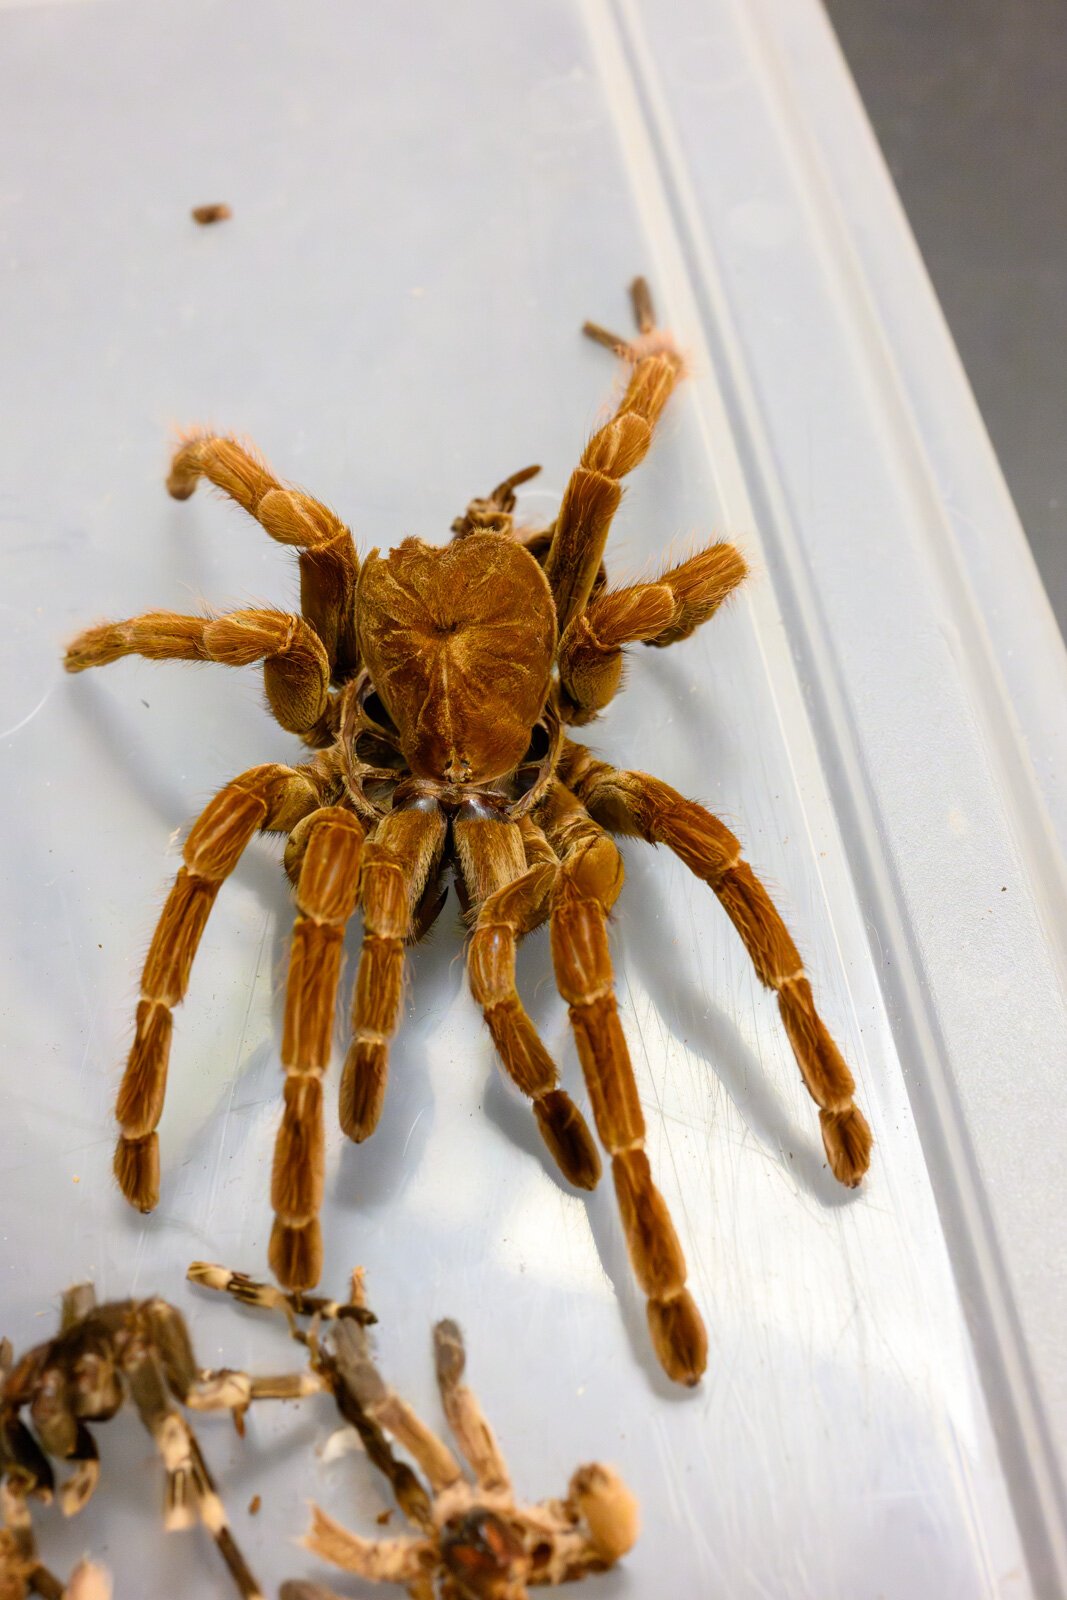 A tarantula exo-skeleton at the EMU tarantula lab.